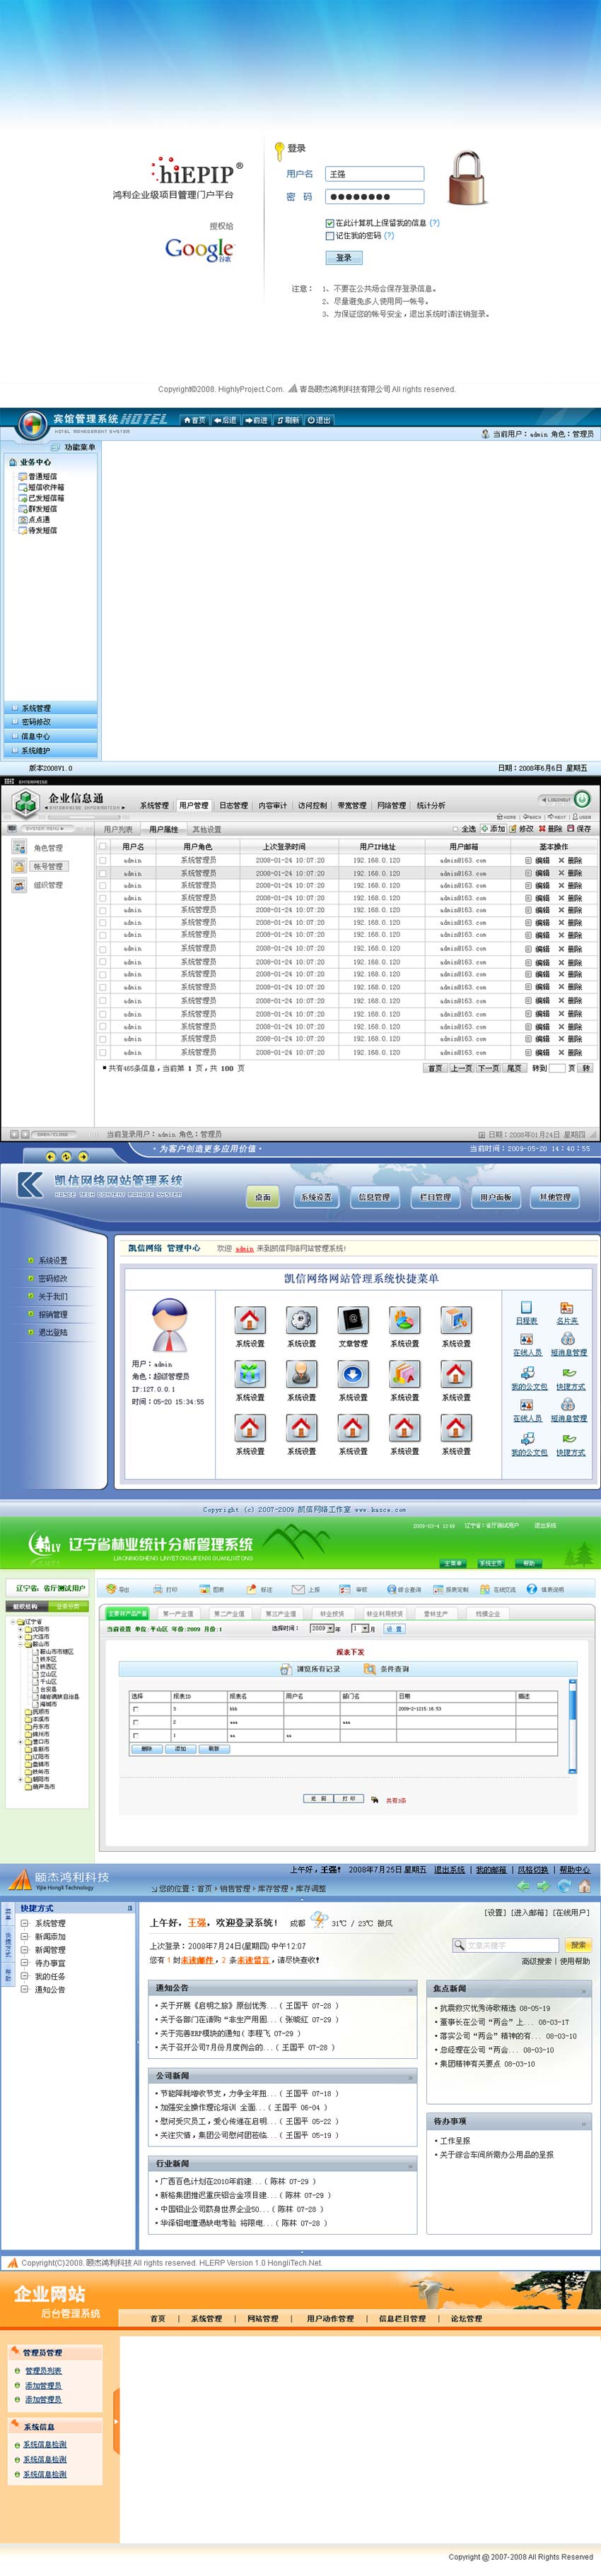 10套中文网站登录和中文网站后台管理界面模板psd下载_网站后台模板插图源码资源库